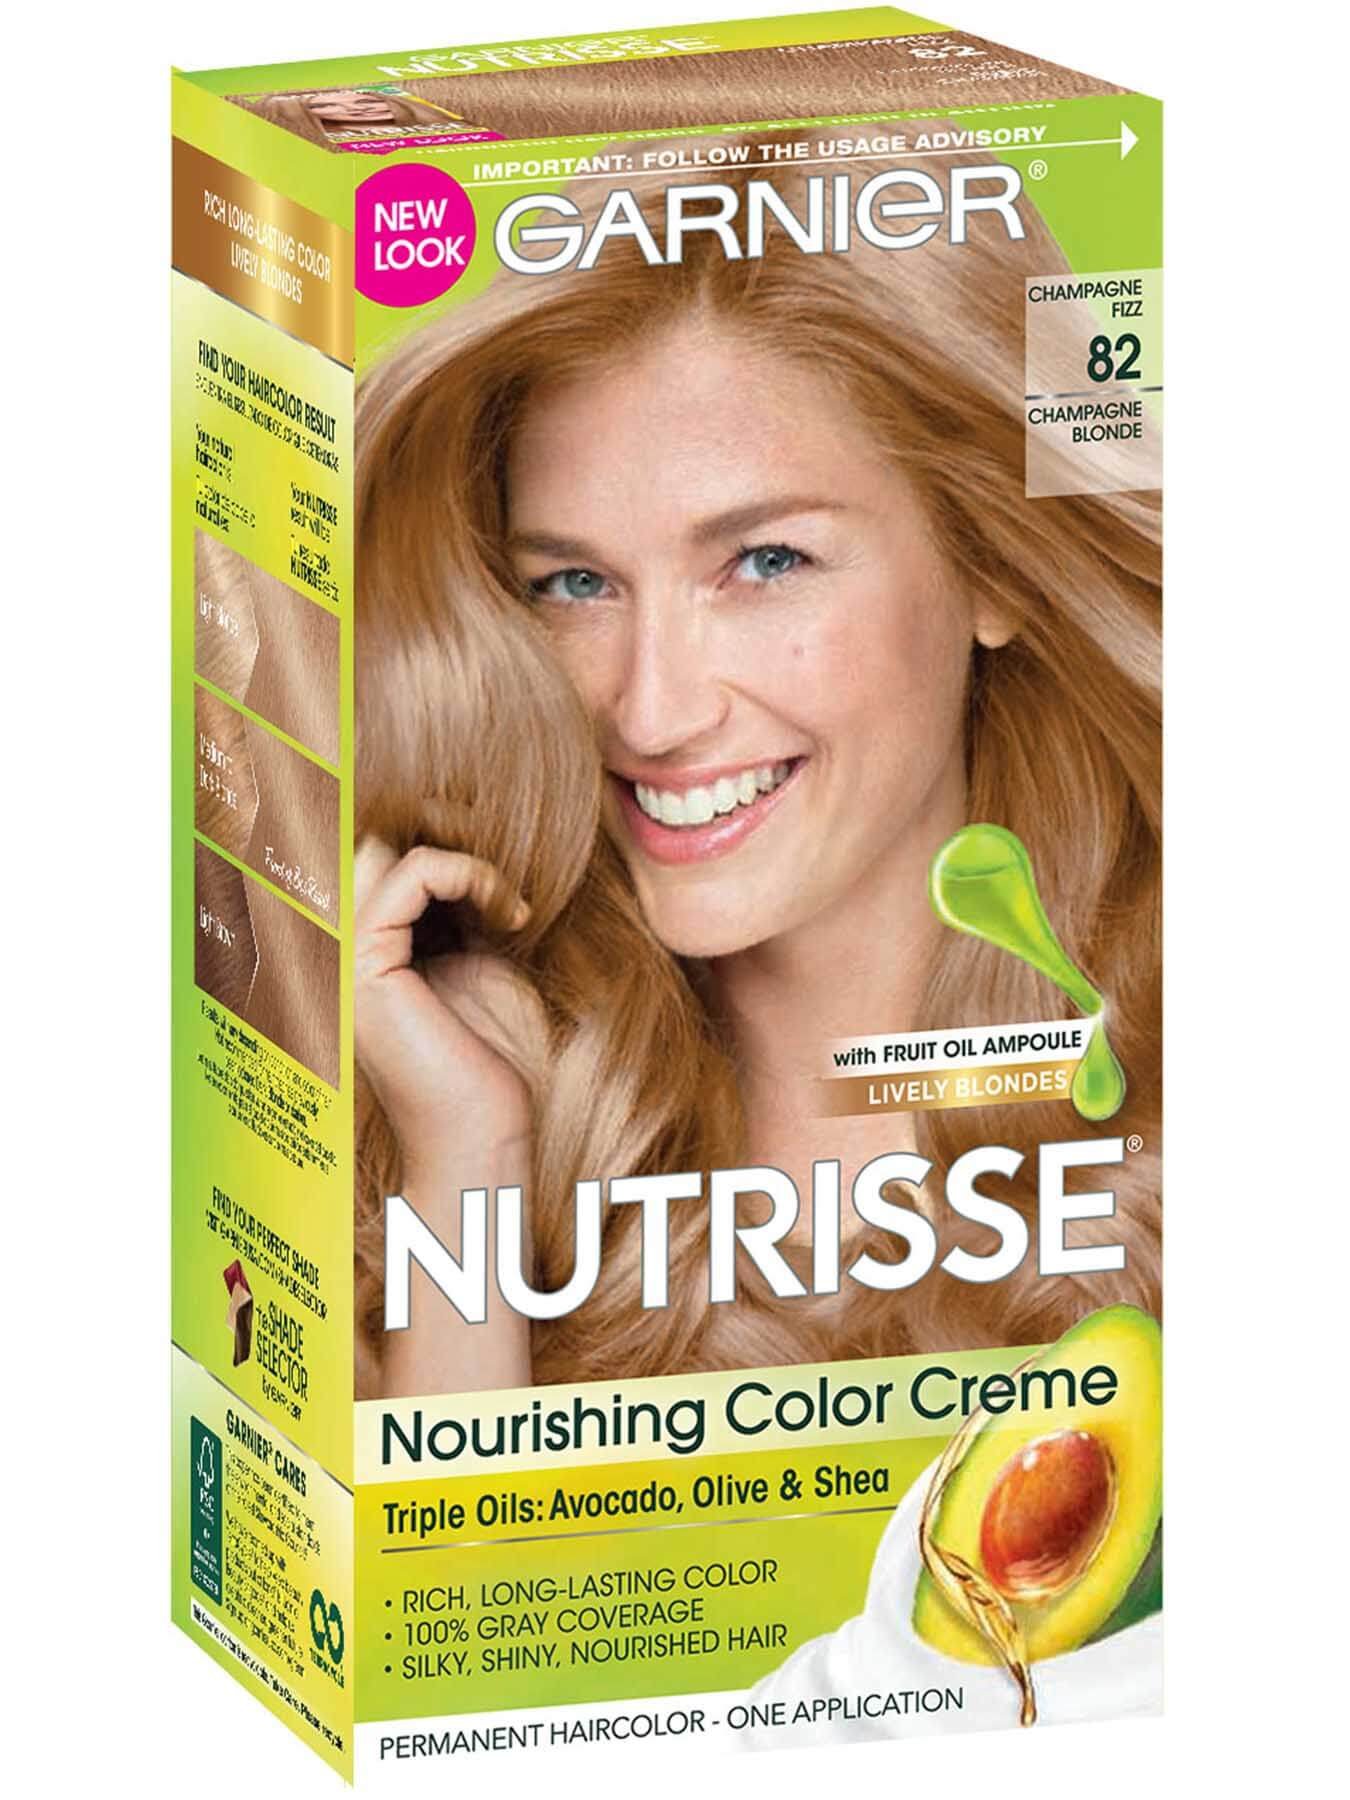 Nutrisse Nourishing Color Creme - Champagne Blonde 82 - Garnier